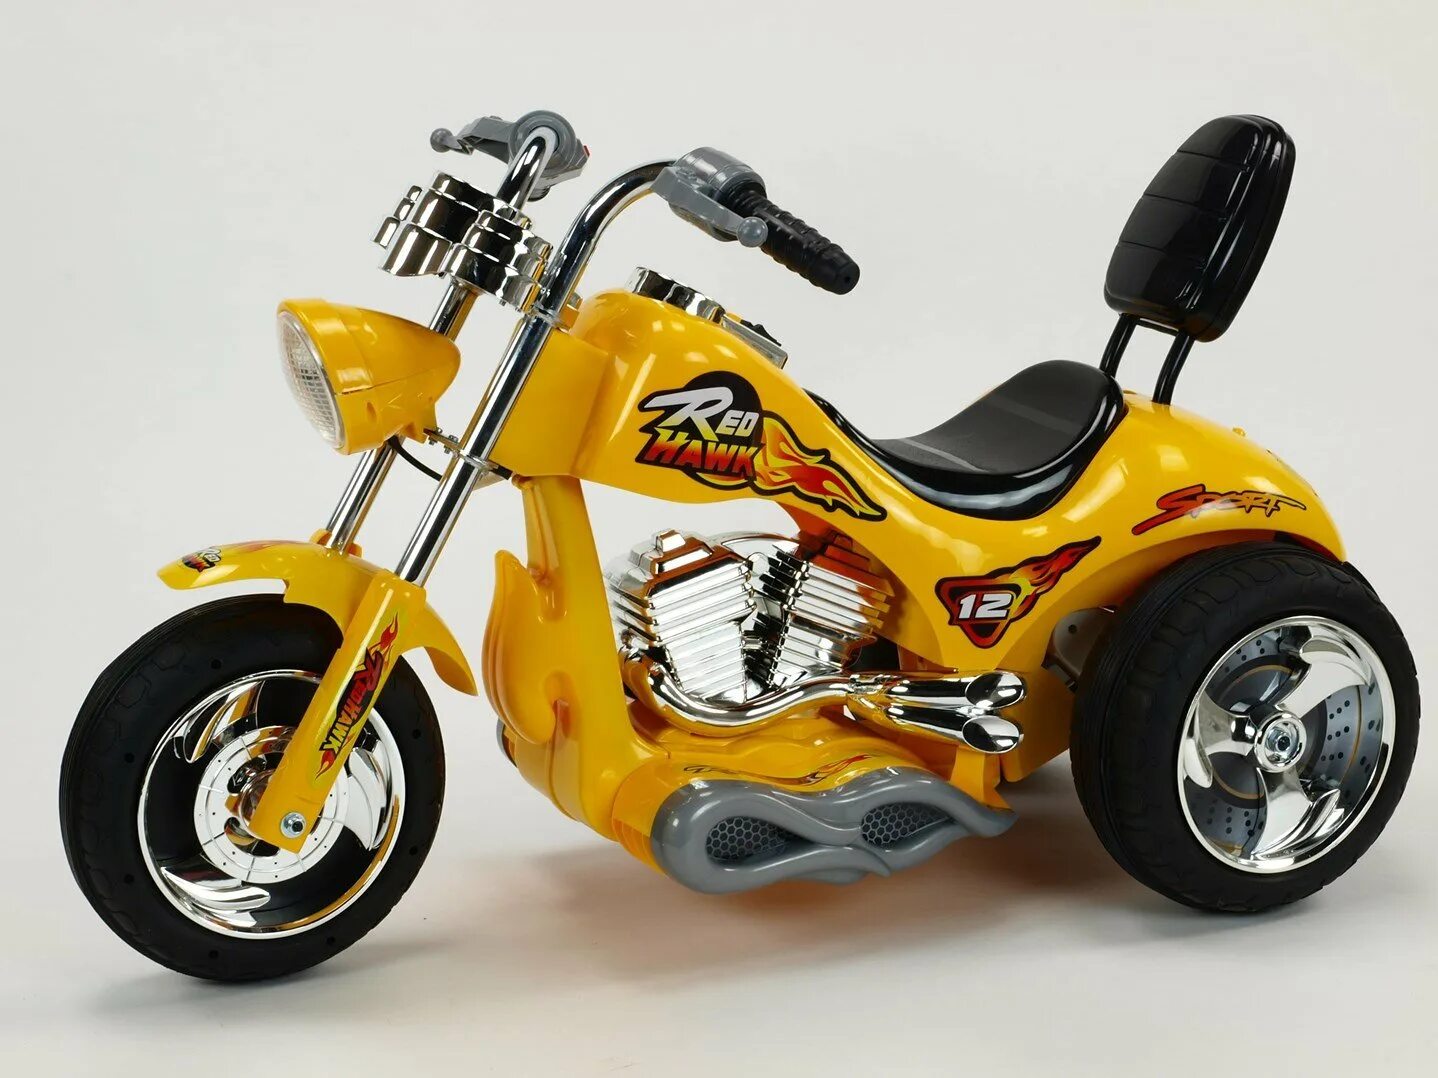 Мотоцикл детский TCV Hawk 520. Red Hawk мотоцикл детский. Детский мотоцикл Hawk 52111. Байки для детей. Купить детский мопед